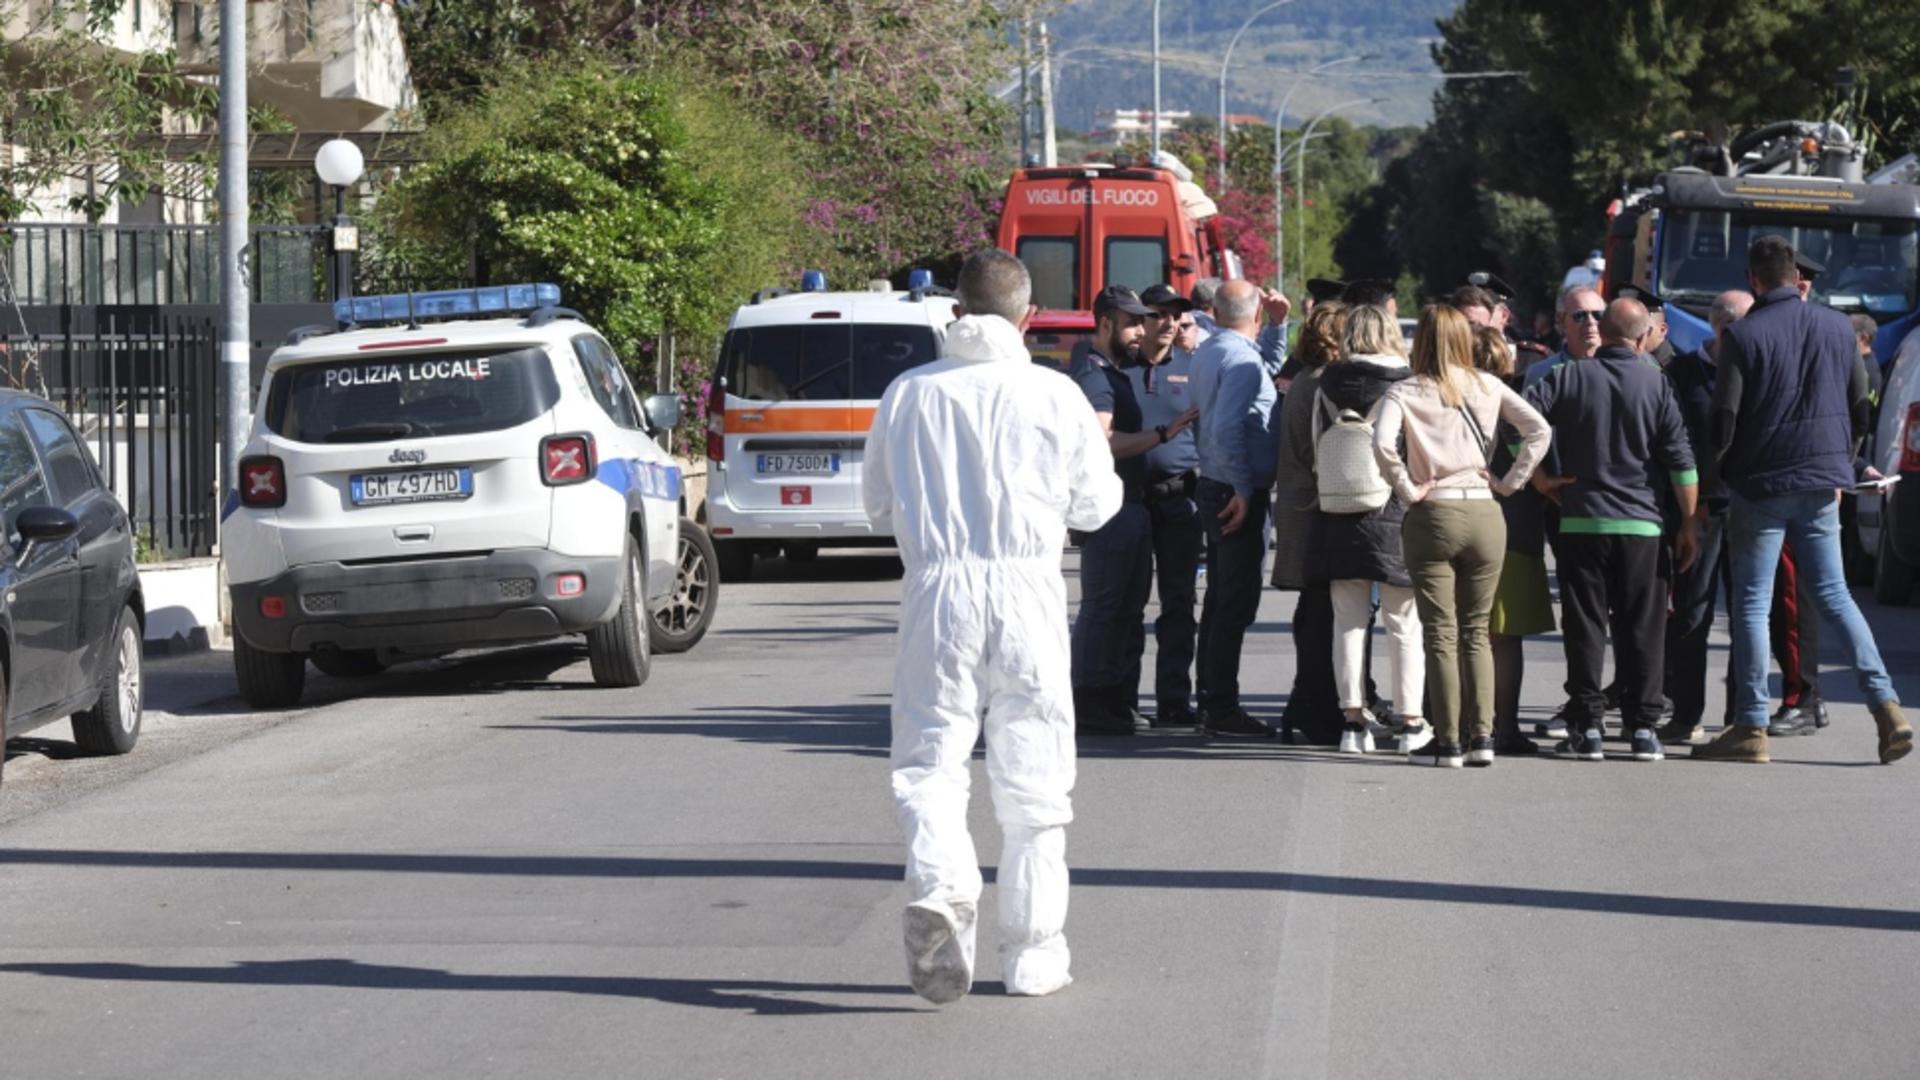 Sfârșit tragic pentru 5 muncitori din Italia. A murit intoxicați în stația de epurare a orașului